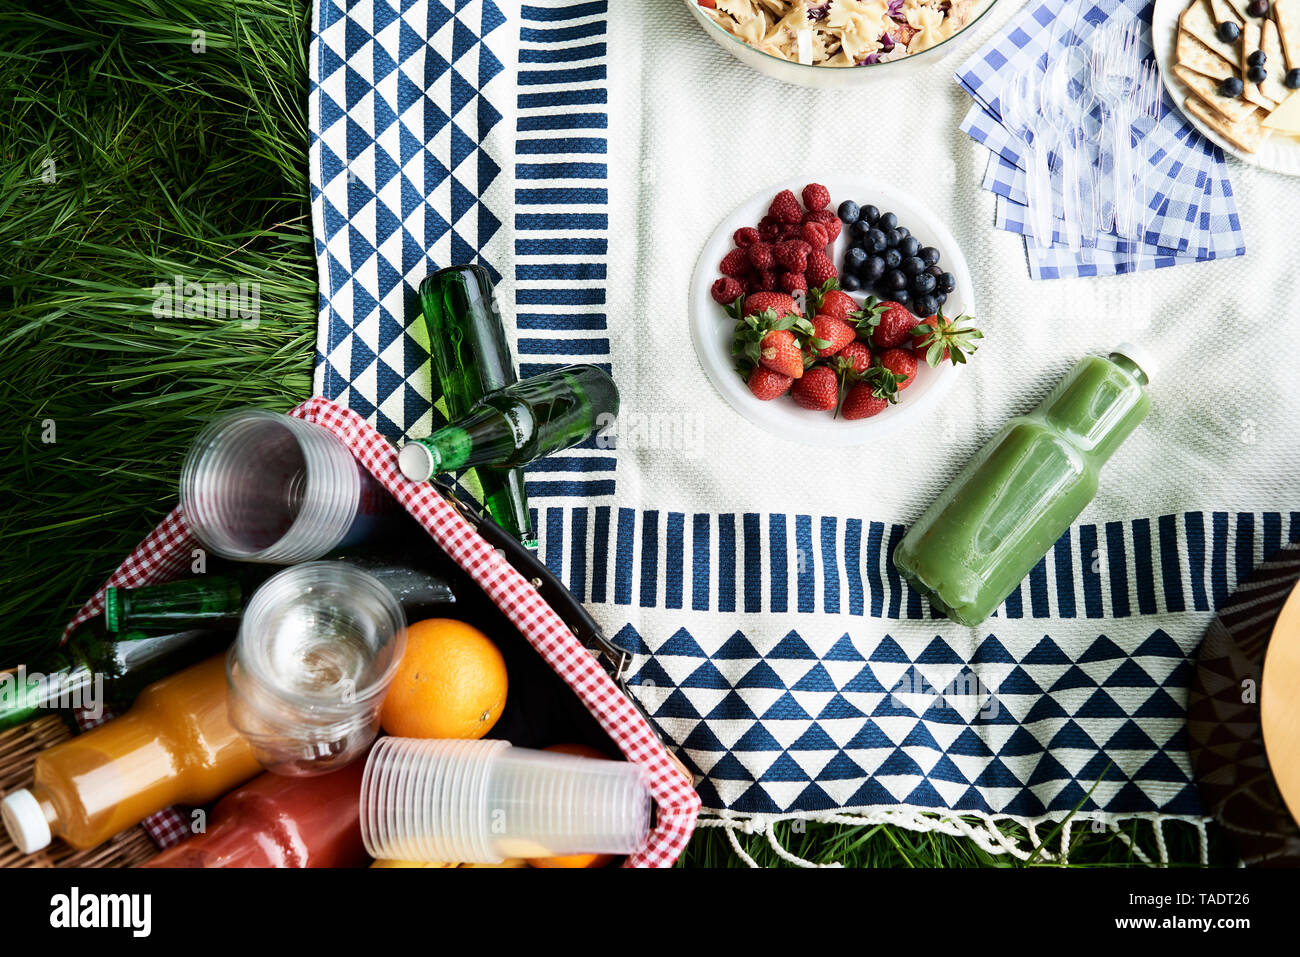 Vista superiore di sani spuntini picnic su una coperta Foto Stock